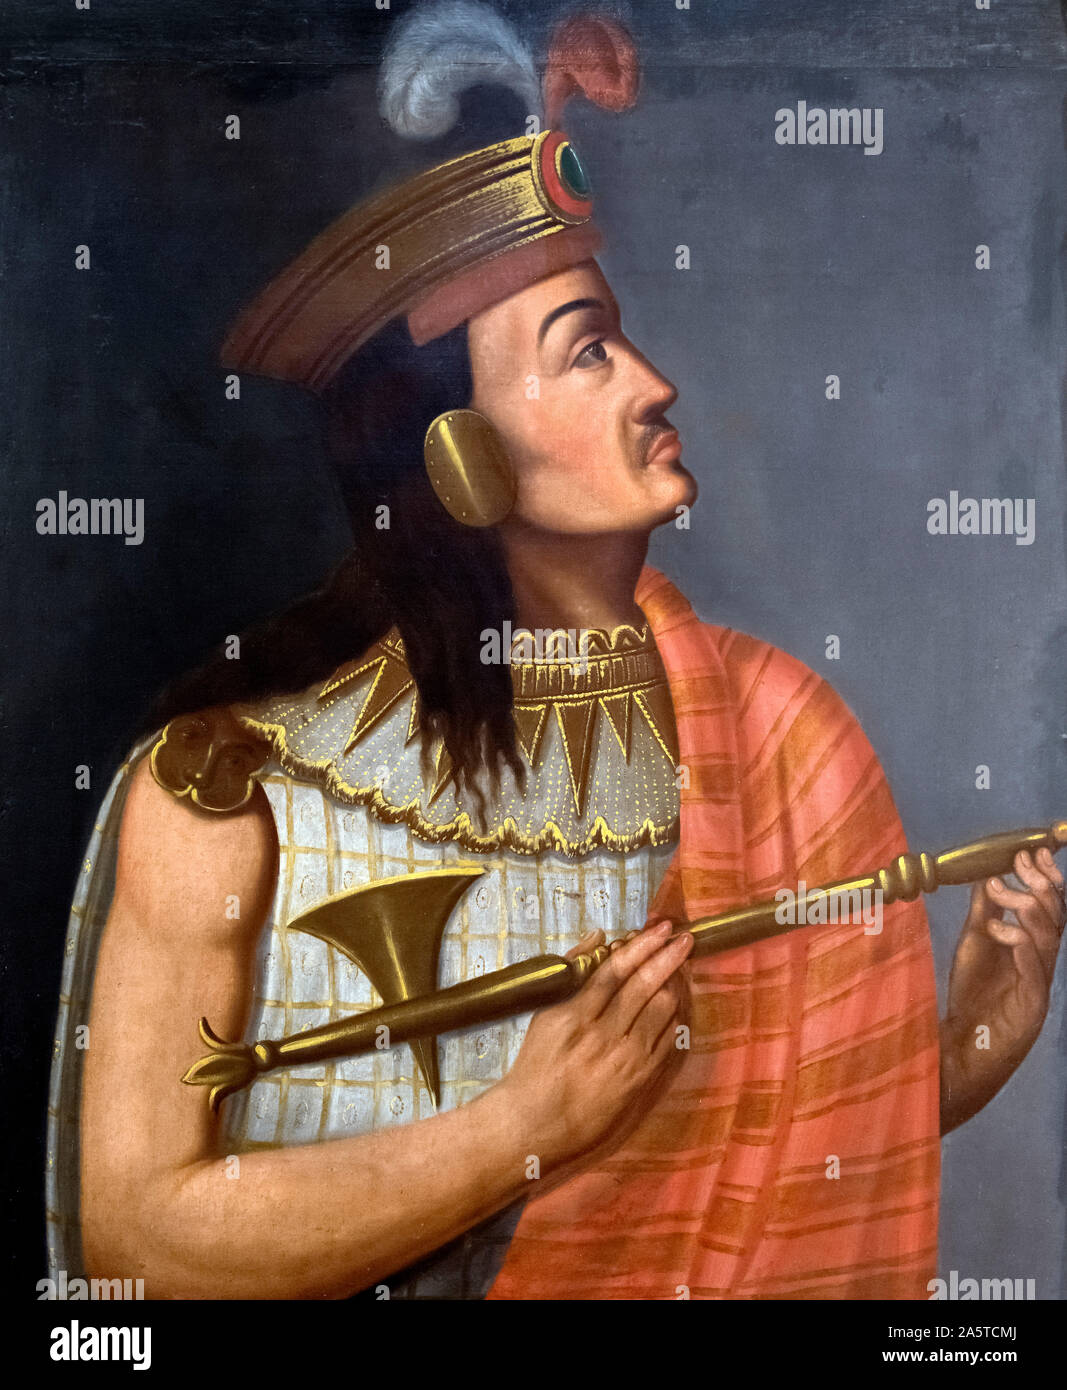 Atahualpa Inca (c.1502-1533), anónimo retrato, óleo sobre lienzo, del siglo XIX. Atahualpa fue el último emperador inca, cuyo reinado fue terminado por la conquista española en 1532. Foto de stock